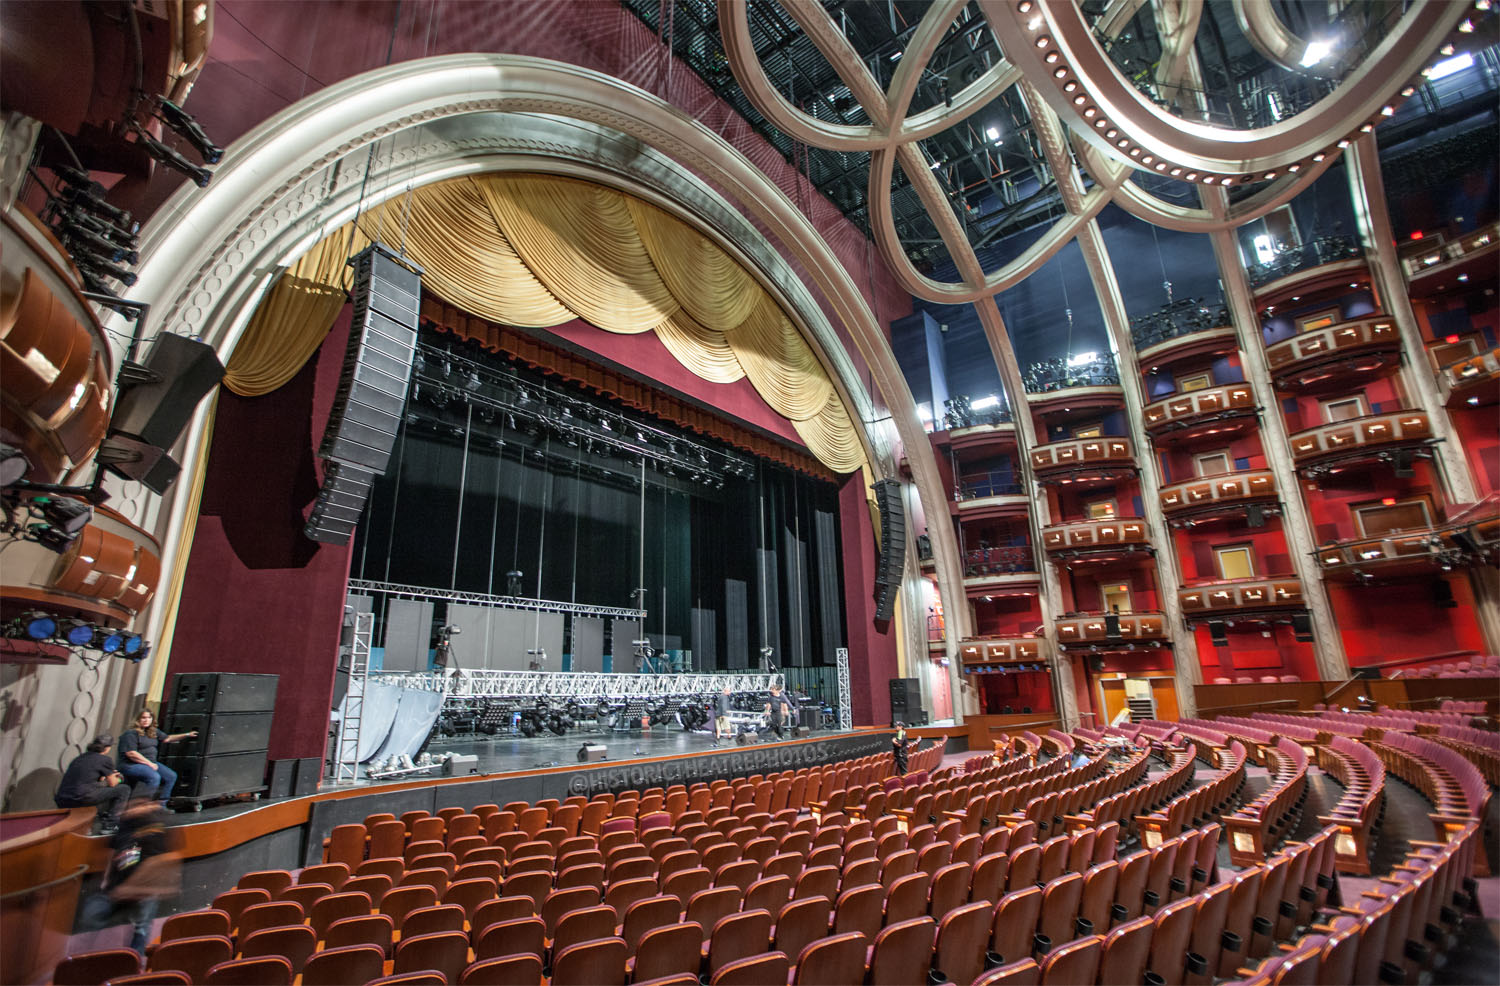 Binne Hollywood se Dolby-teater, die wêreld se bekendste ouditorium